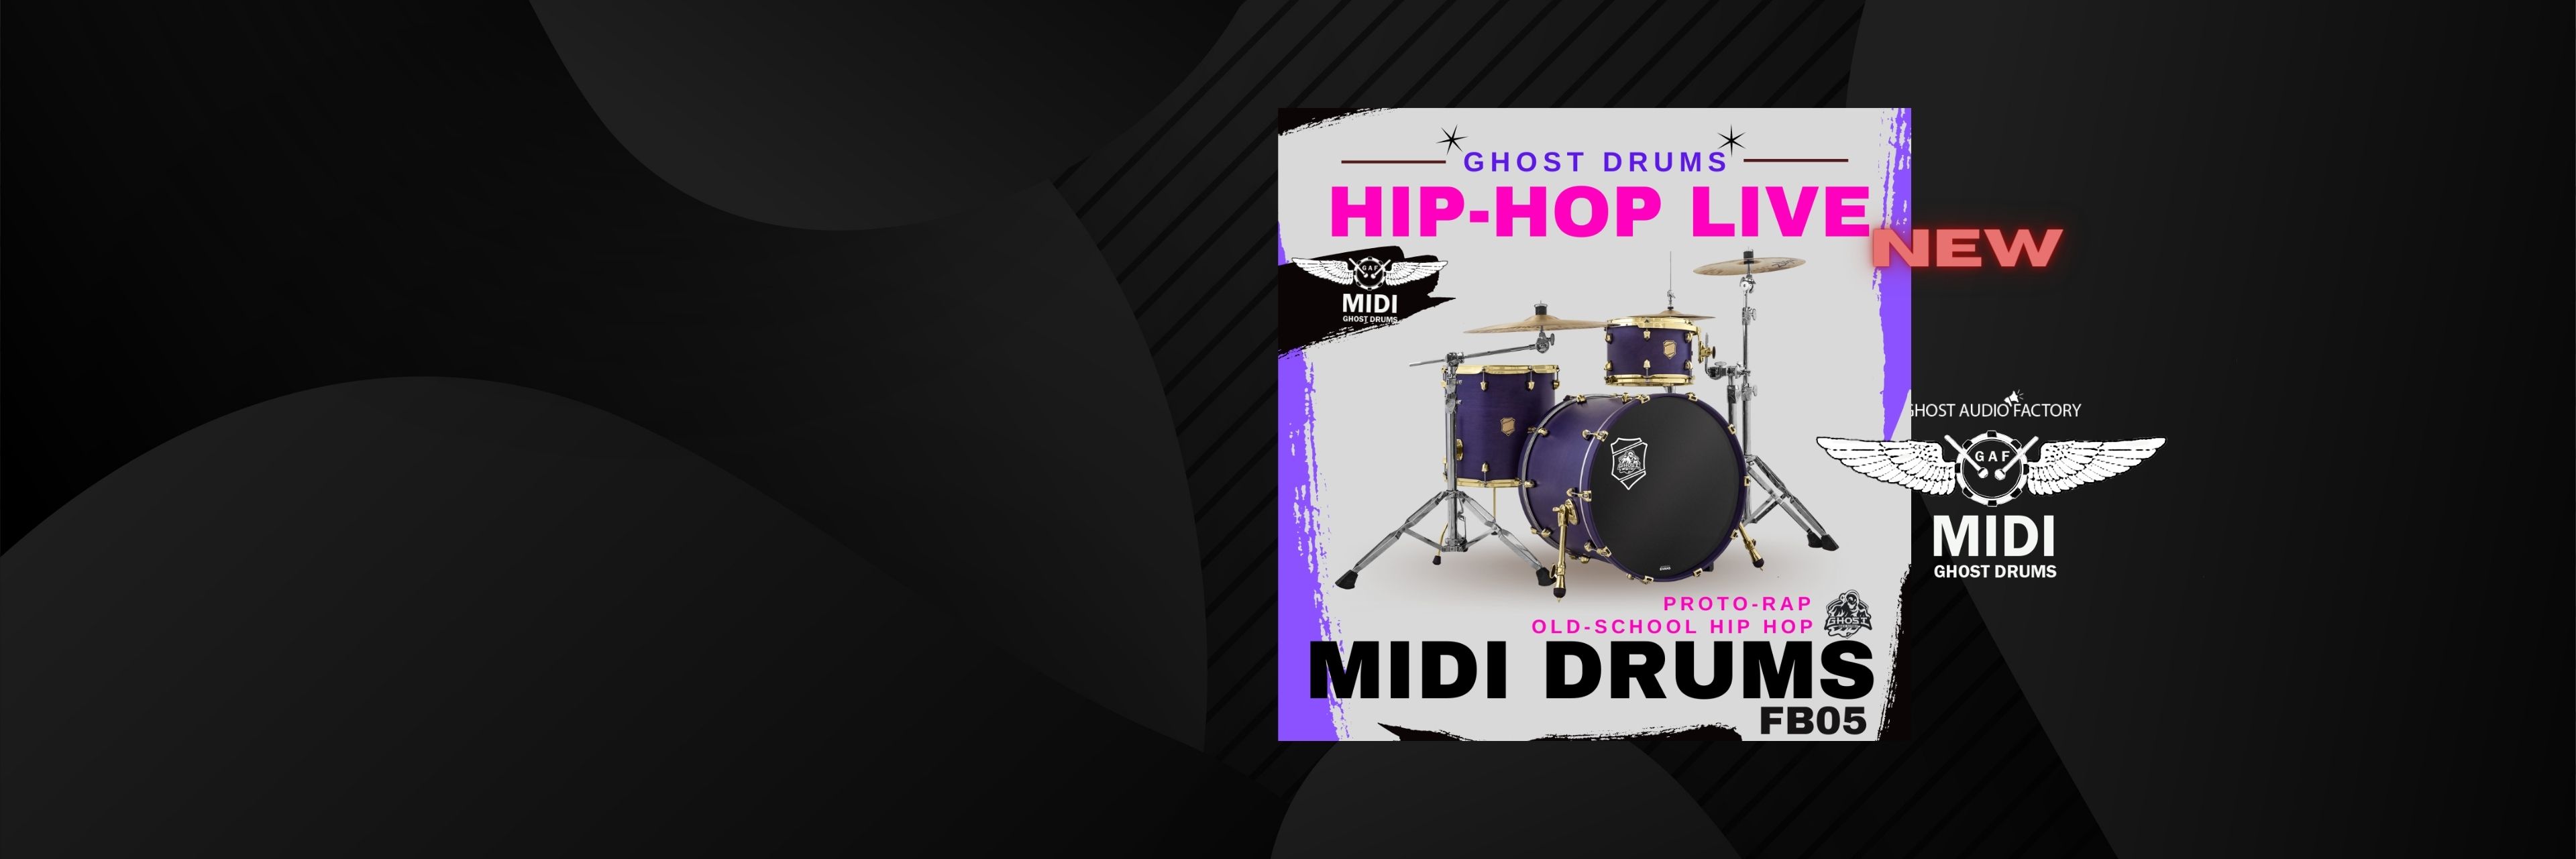 MIDI DRUMS – Hip Hop Live